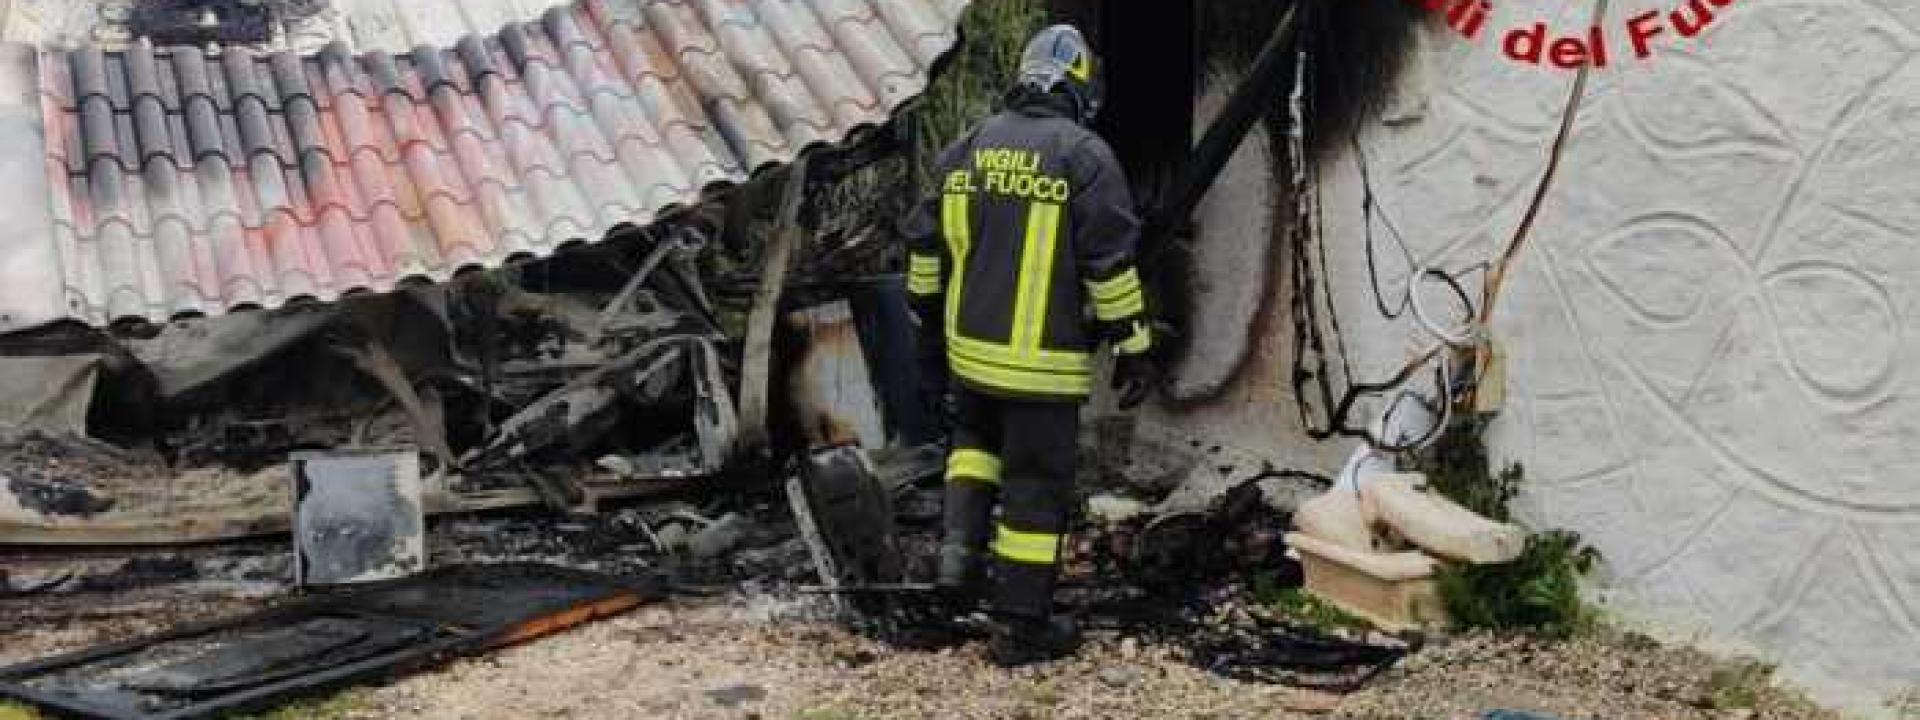 Incendio nel capanno accanto alla casa, muore un 44enne